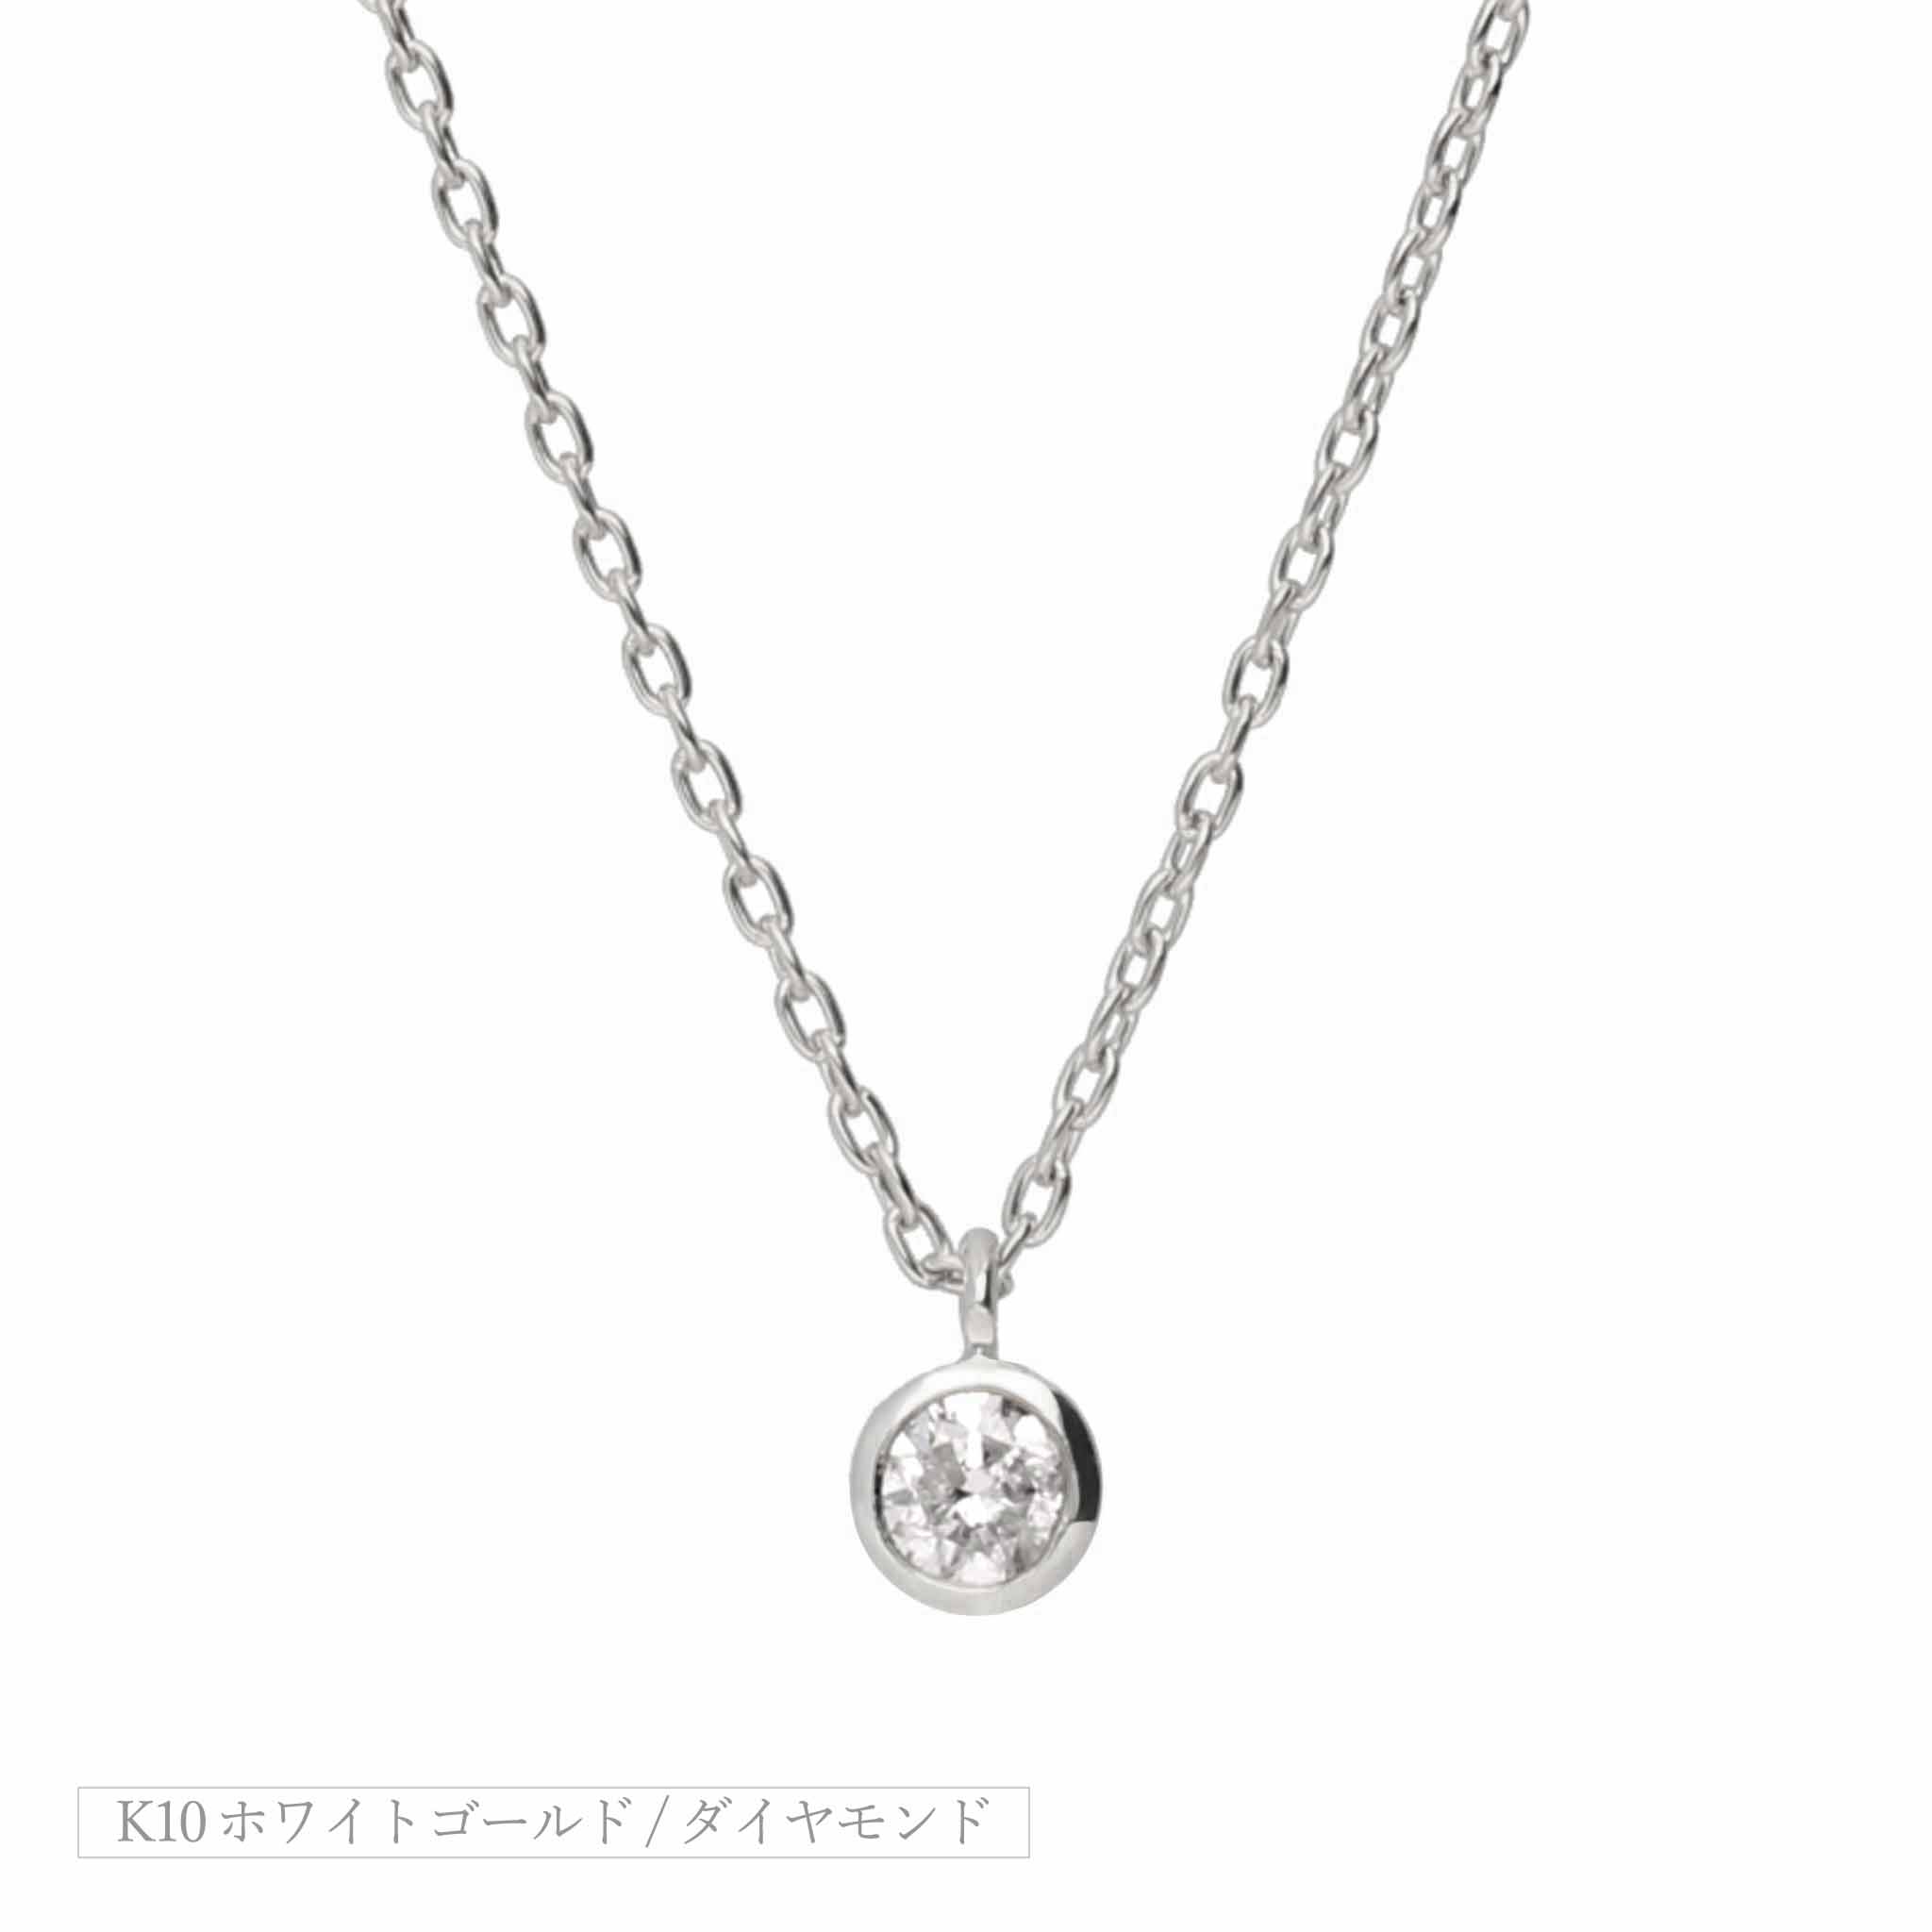 K10 ダイヤモンド 0.1ct 覆輪 ネックレス – anybelle